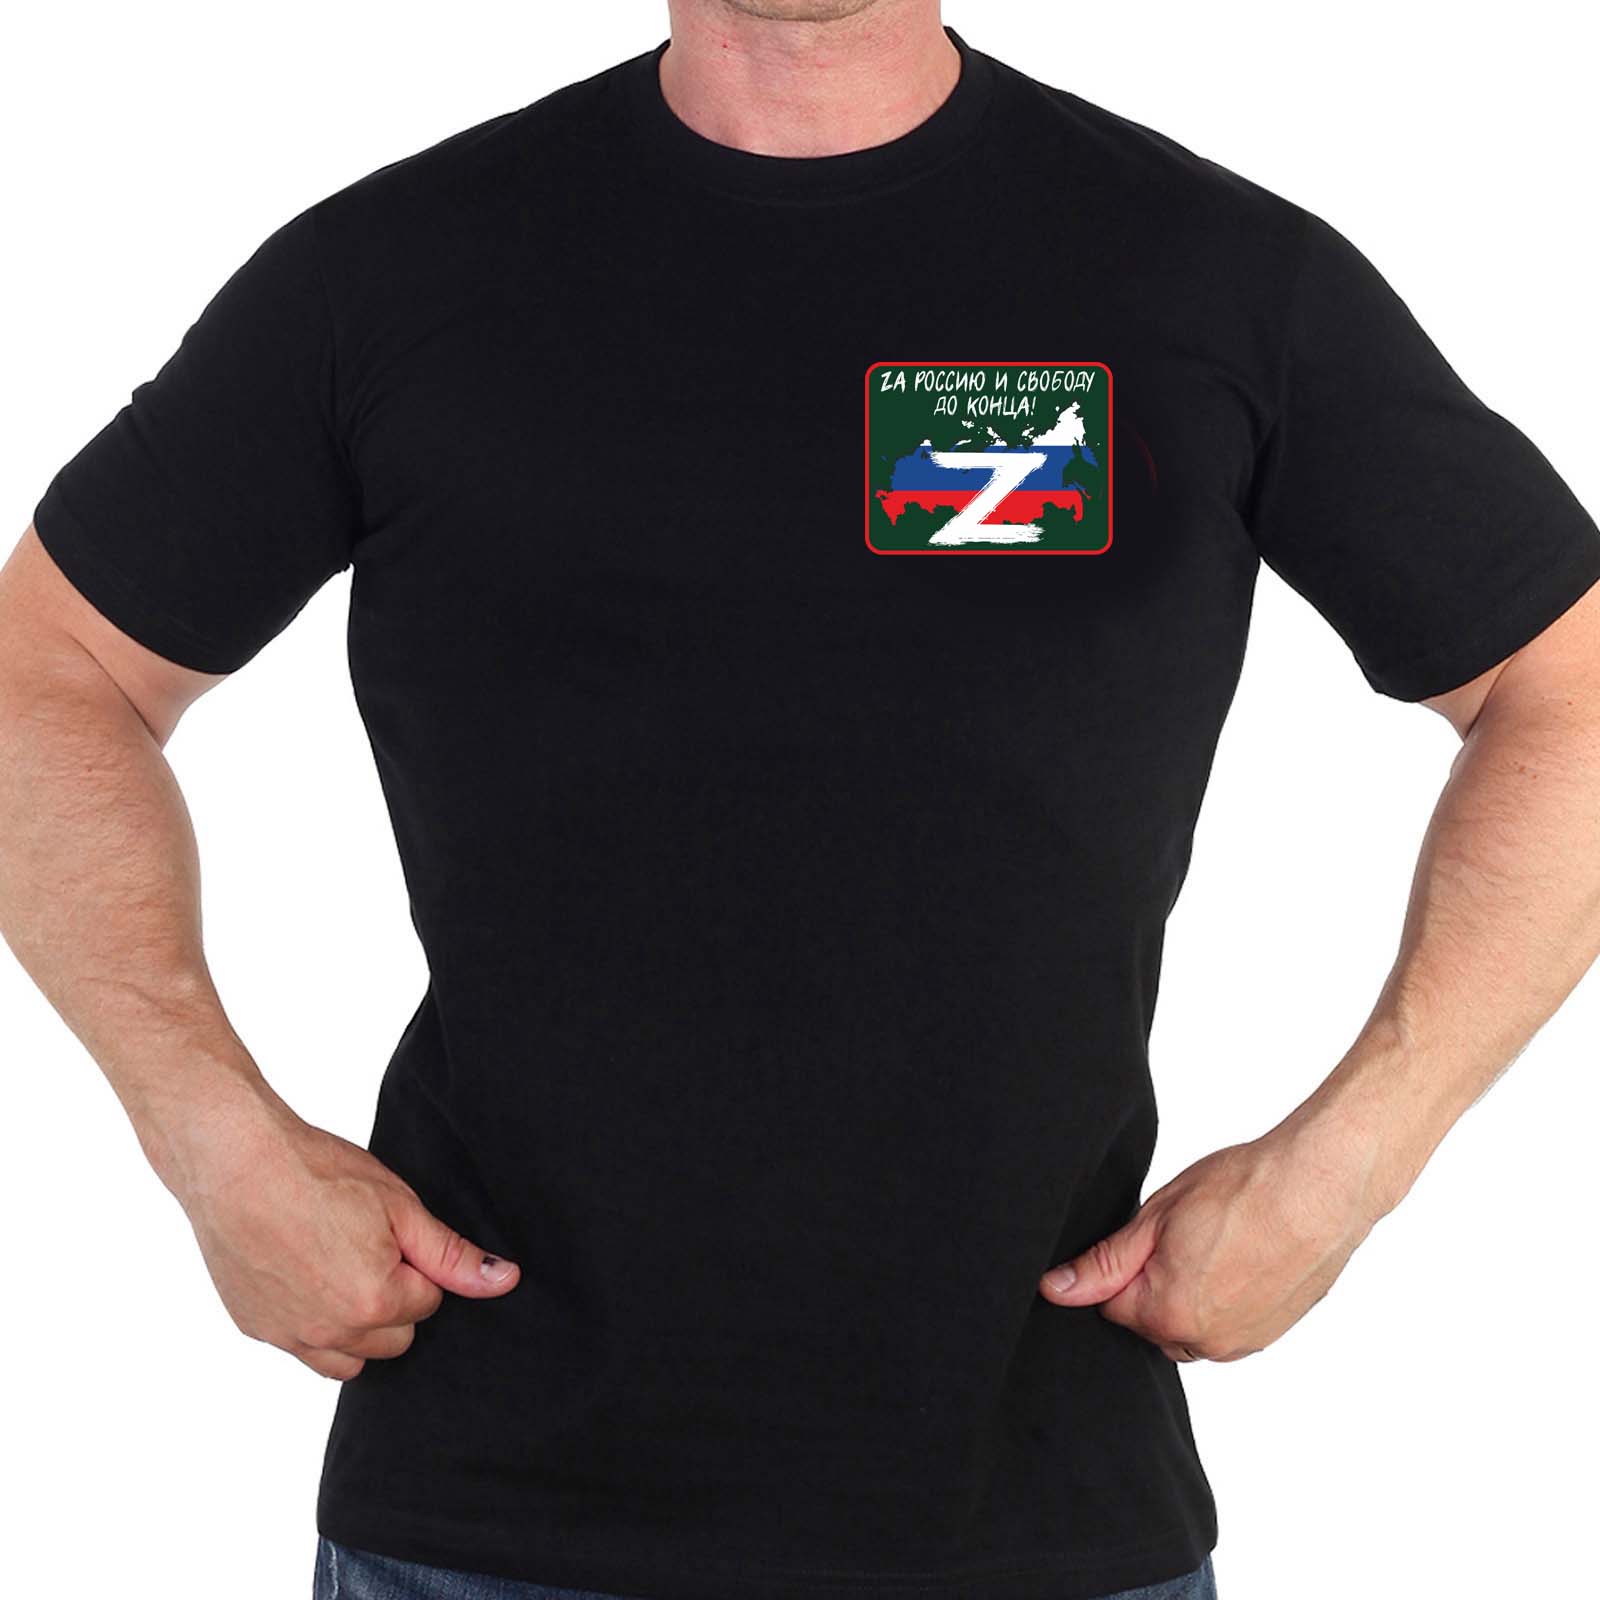 Купить черную оригинальную футболку с термотрансфером Zа Россию и свободу до конца выгодно